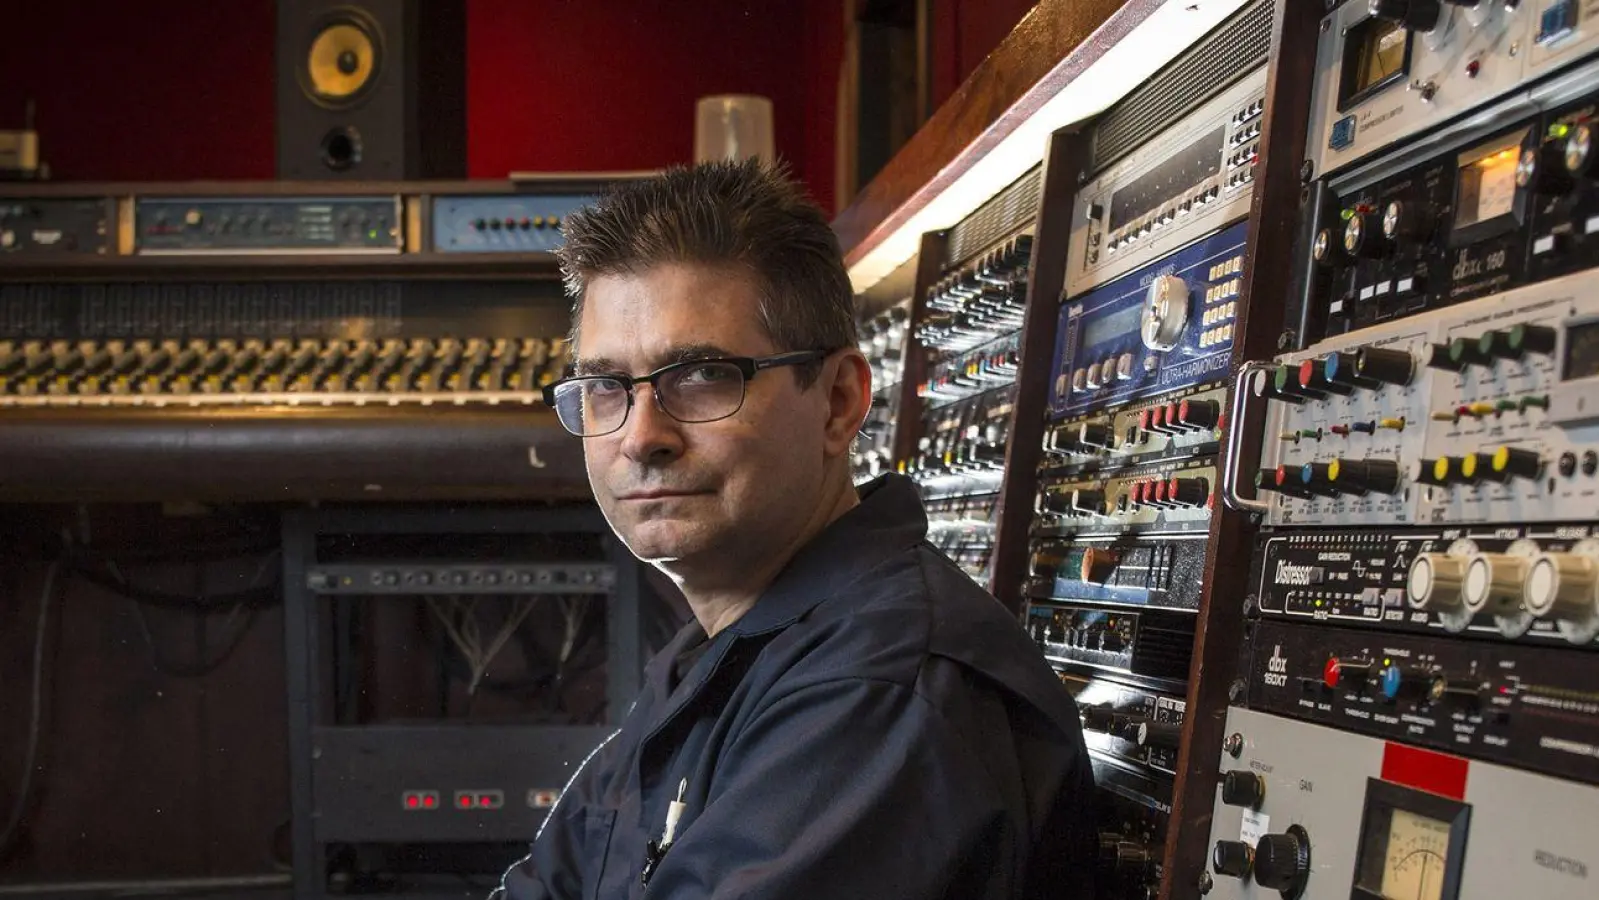 Musikproduzent Steve Albini in seinem Studio in Chicago im Jahr 2014. Die US-amerikanische Indierock-Ikone ist im Alter von 61 Jahren gestorben. (Foto: Brian Cassella/TNS via ZUMA Press Wire/dpa)